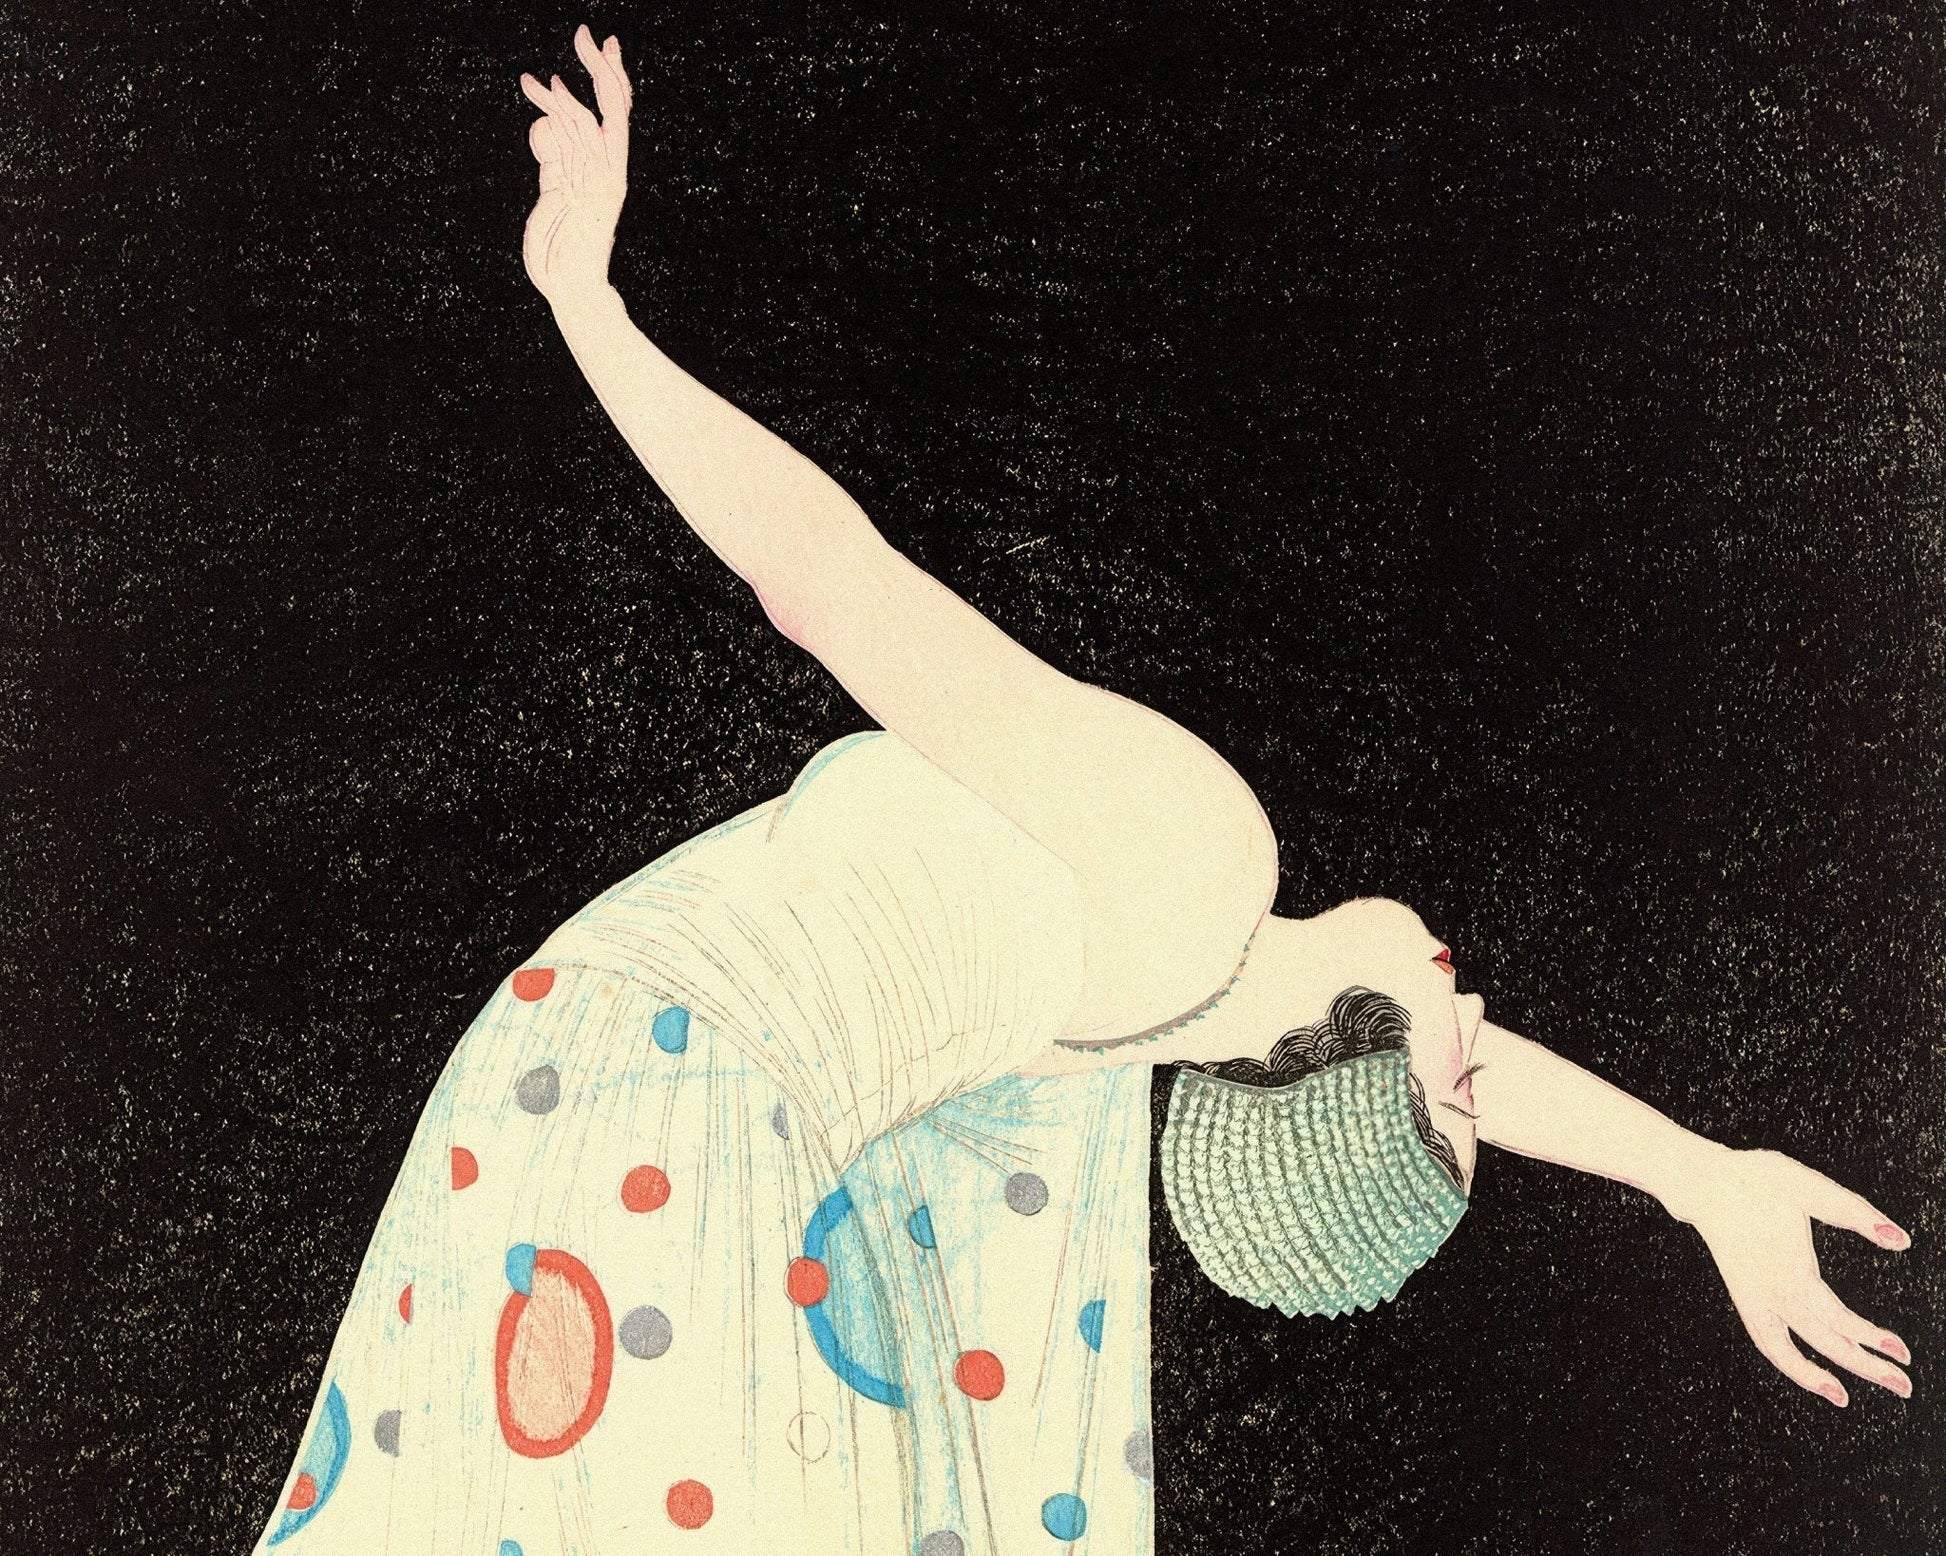 Kiyoshi Kobayakawa "The Dancer" (c.1932) - Mabon Gallery